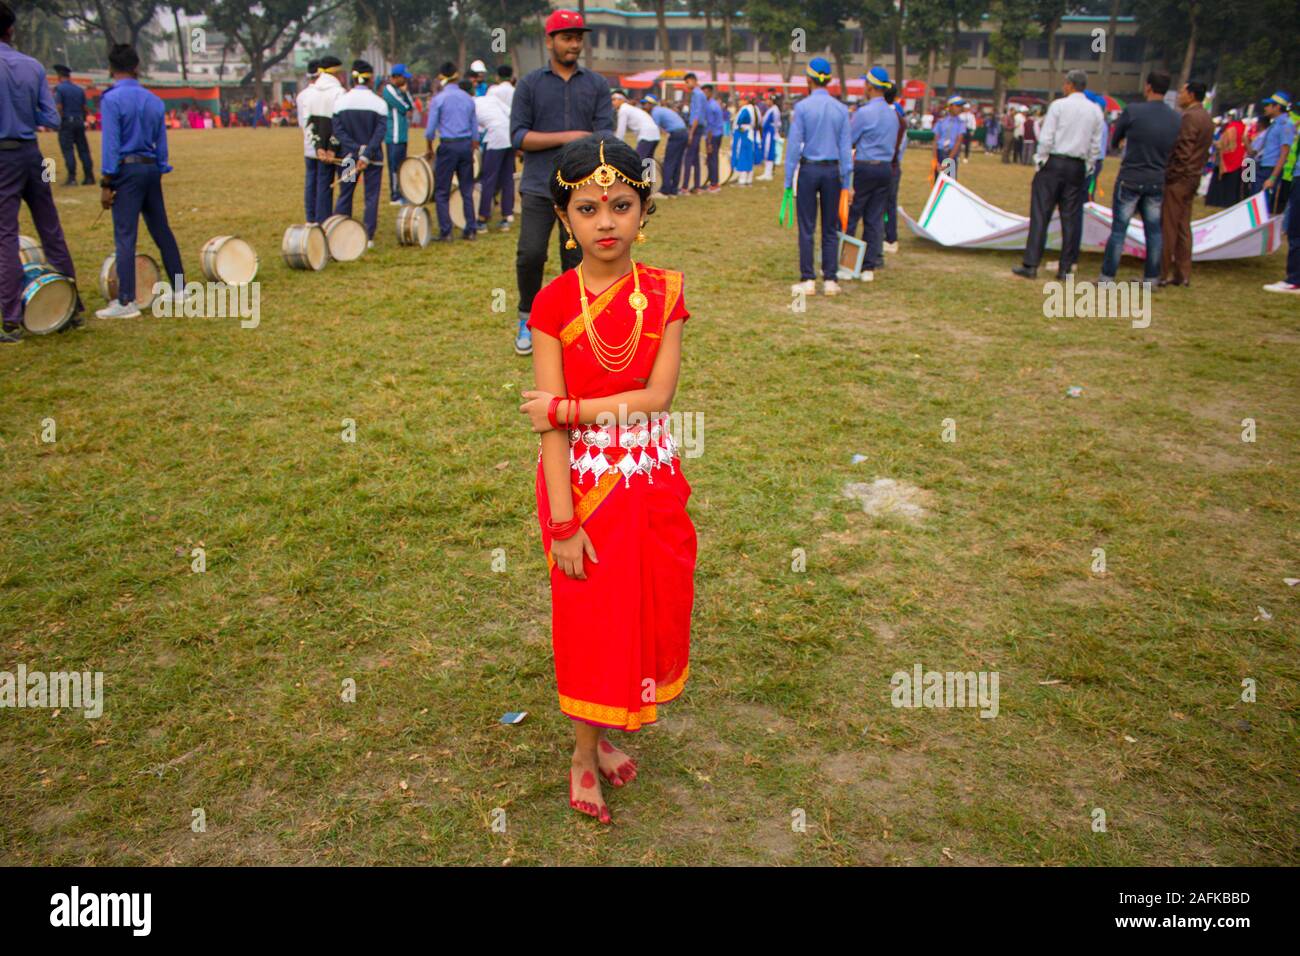 Traditionell feiert Tag des Sieges von Bangladesch: South Asian süße Mädchen teilnehmenden Fancy Dress Wettbewerb durch das Tragen von Schmuck Stockfoto